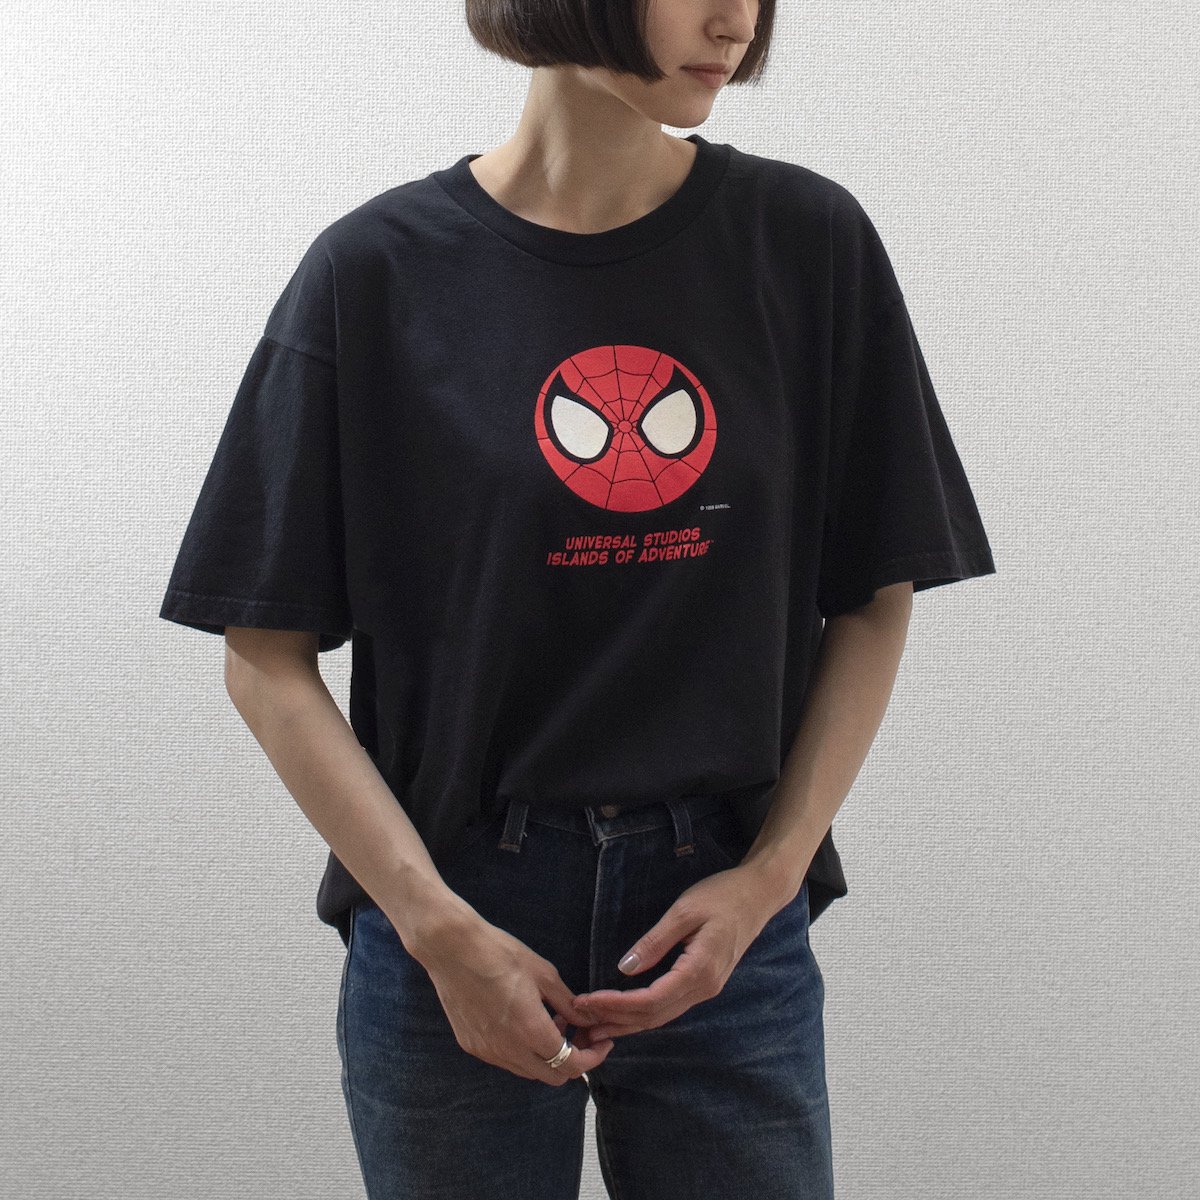 スパイダーマン Tシャツ 米国ユニバーサルスタジオにて購入 Lサイズ